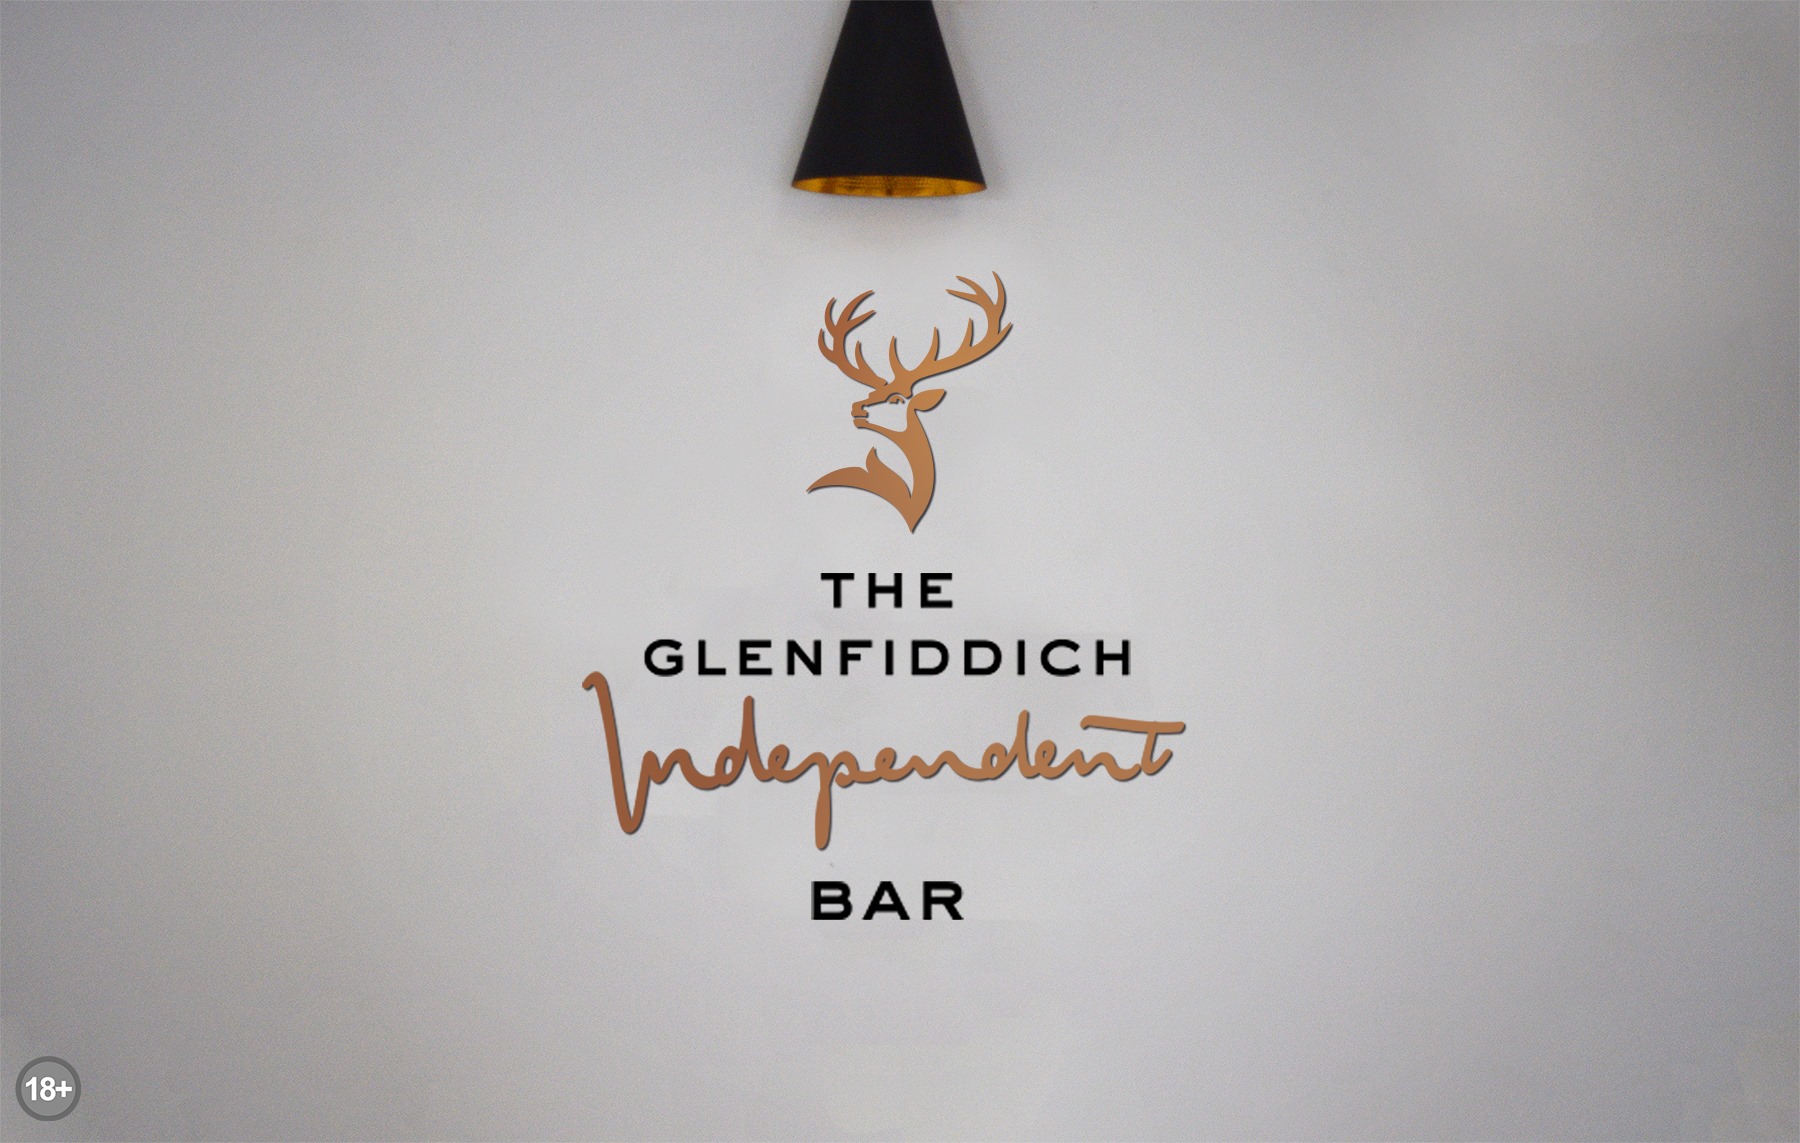 Glenfiddich's new luxury Braamfontein Bar 8